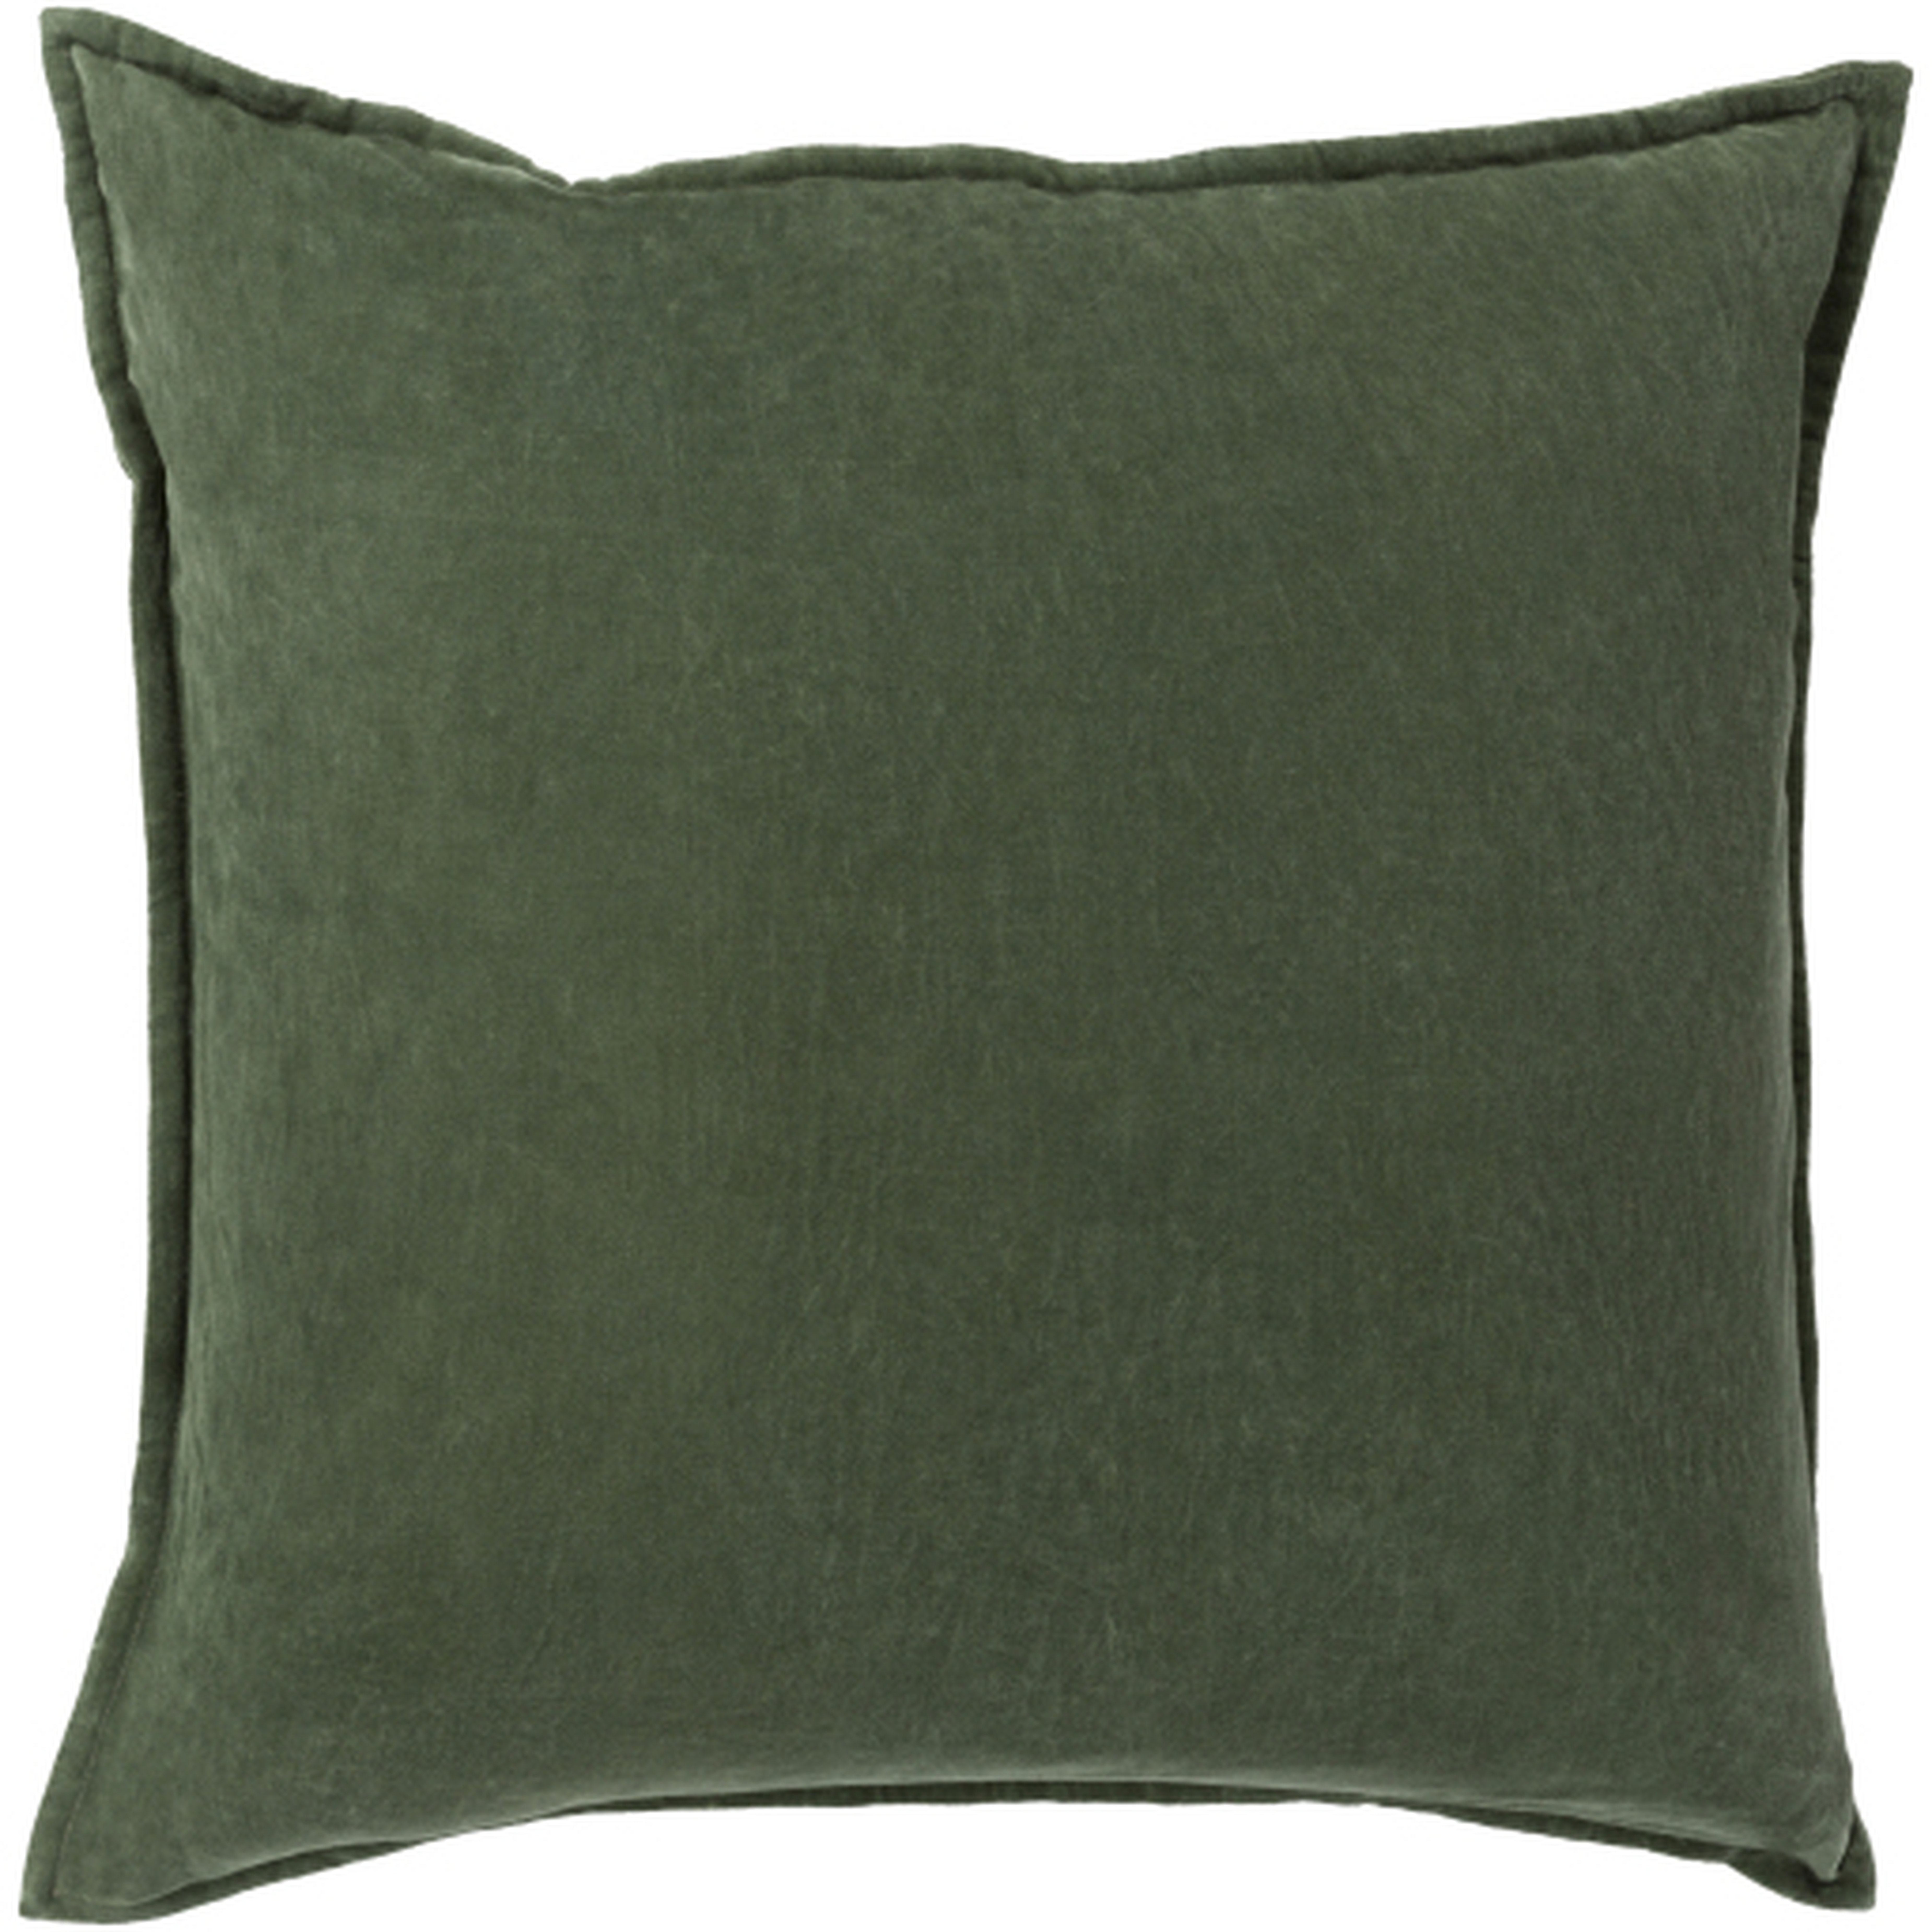 Cotton Velvet Pillow, 20" x 20", Green, Down - Neva Home